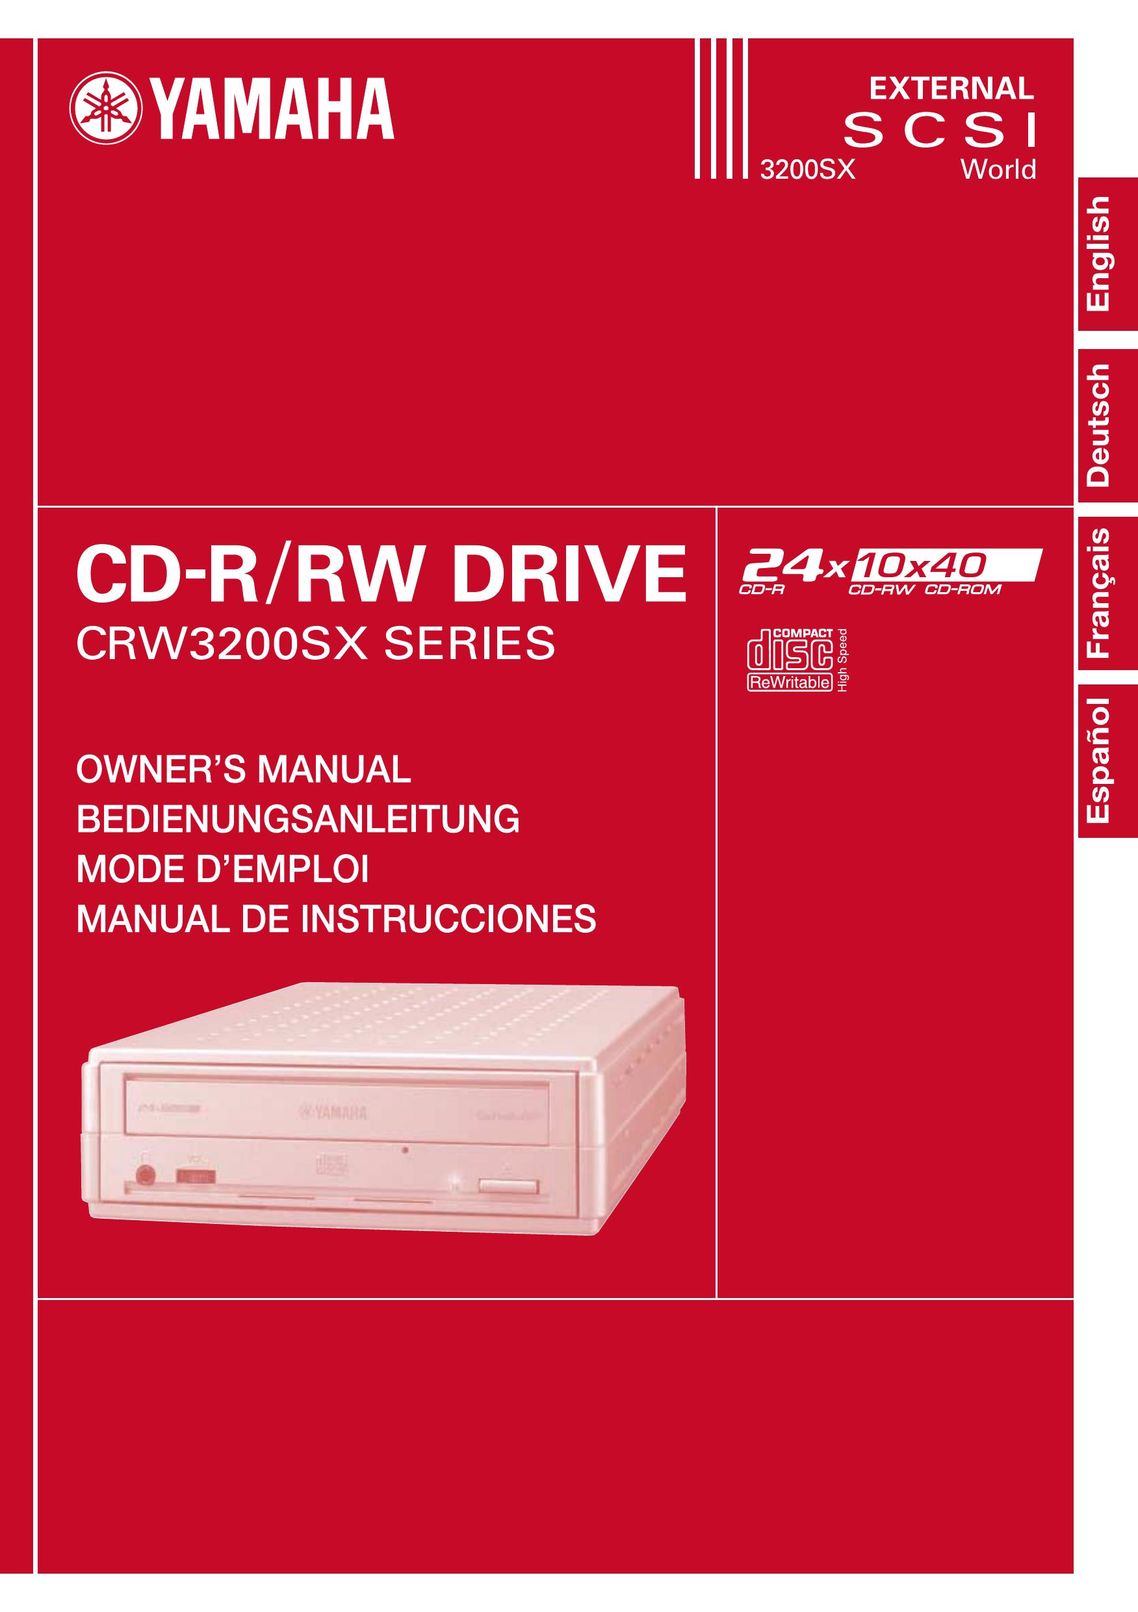 Yamaha CRW3200SX Computer Drive User Manual